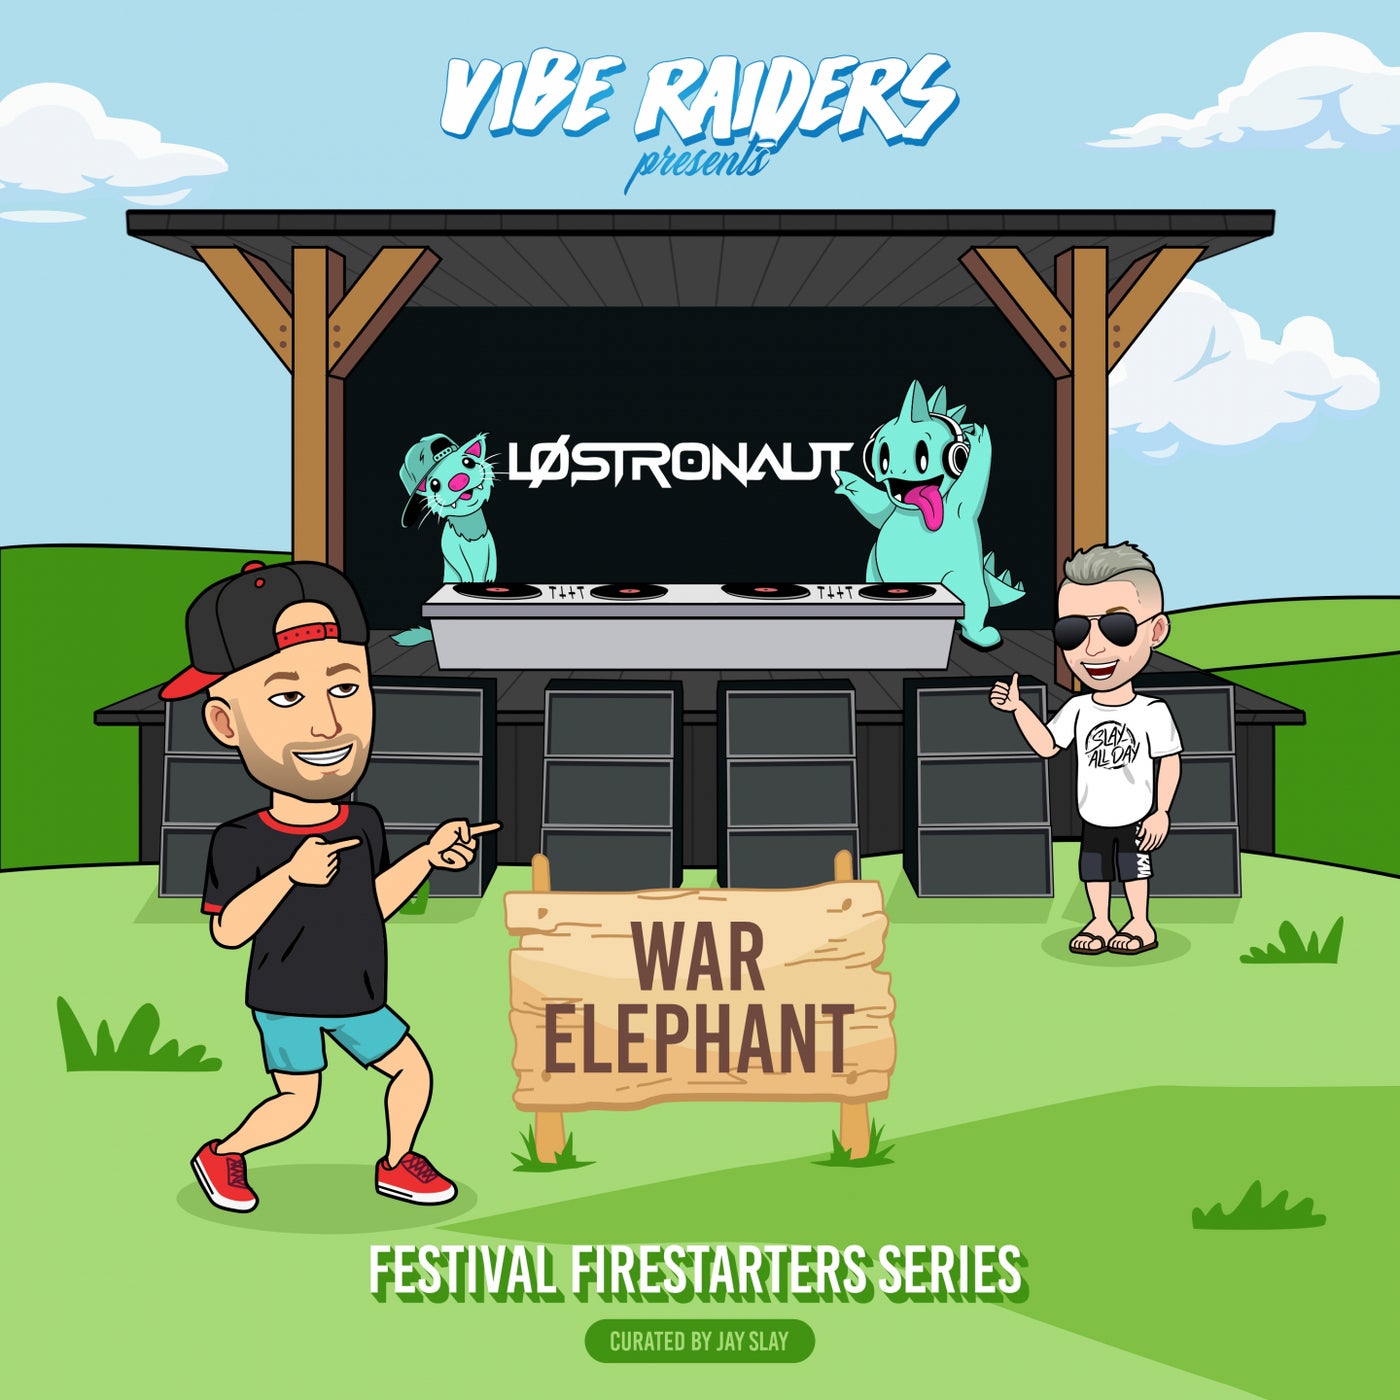 War Elephant (Festival Firestarters series)